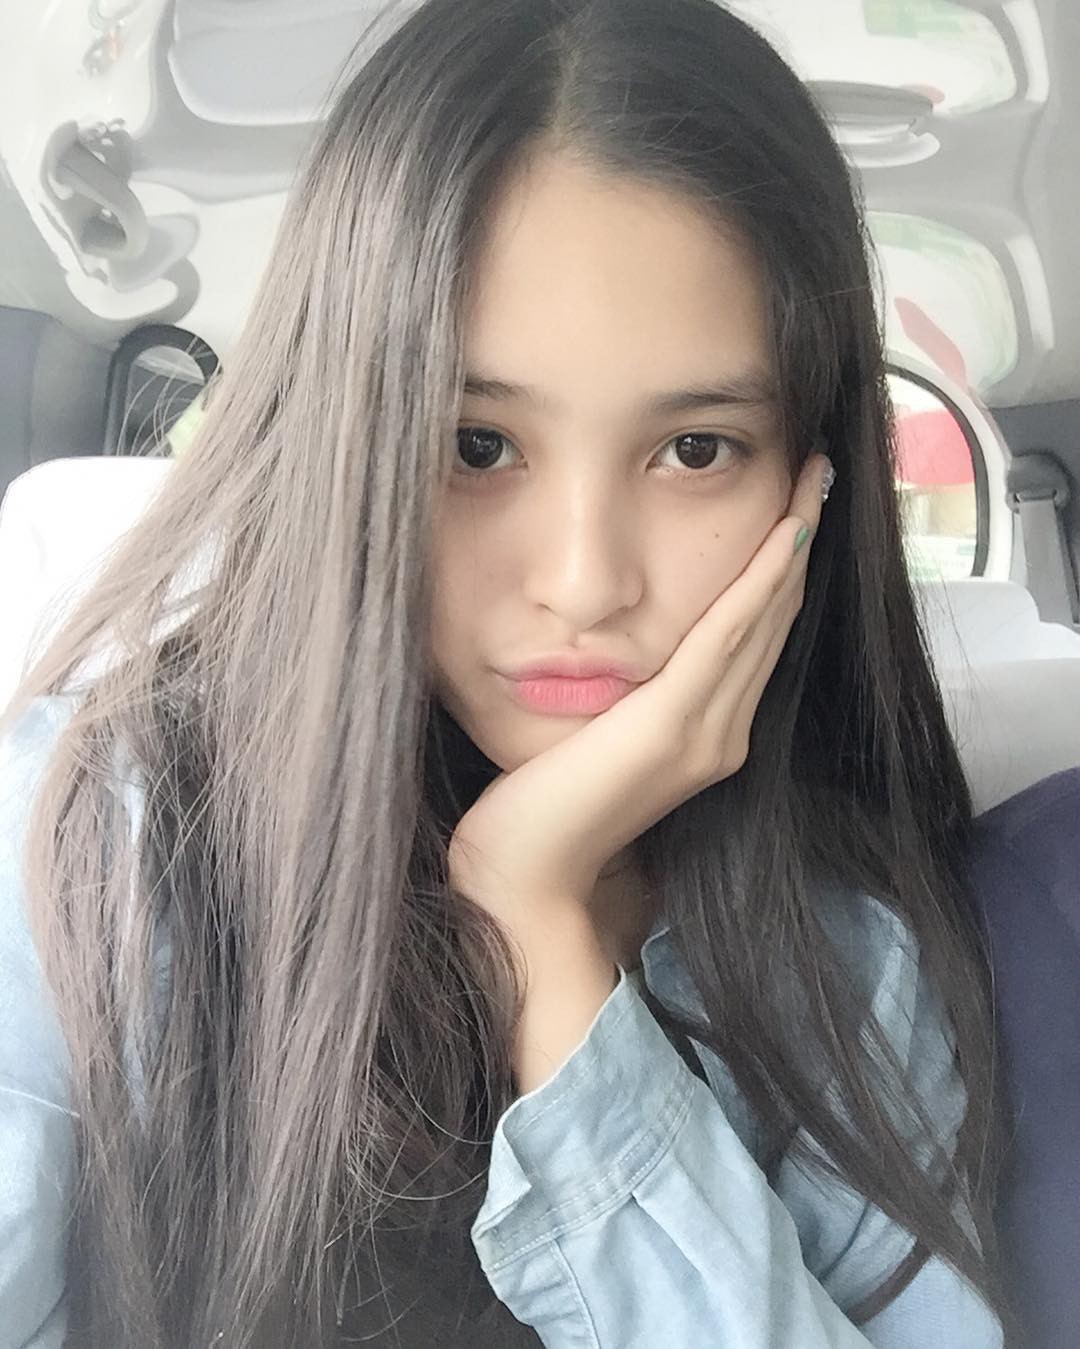 Vẻ đẹp đời thường vừa lai Tây, vừa gợi cảm hút hồn của Tân Hoa hậu Việt Nam 2018 - Trần Tiểu Vy - Ảnh 5.